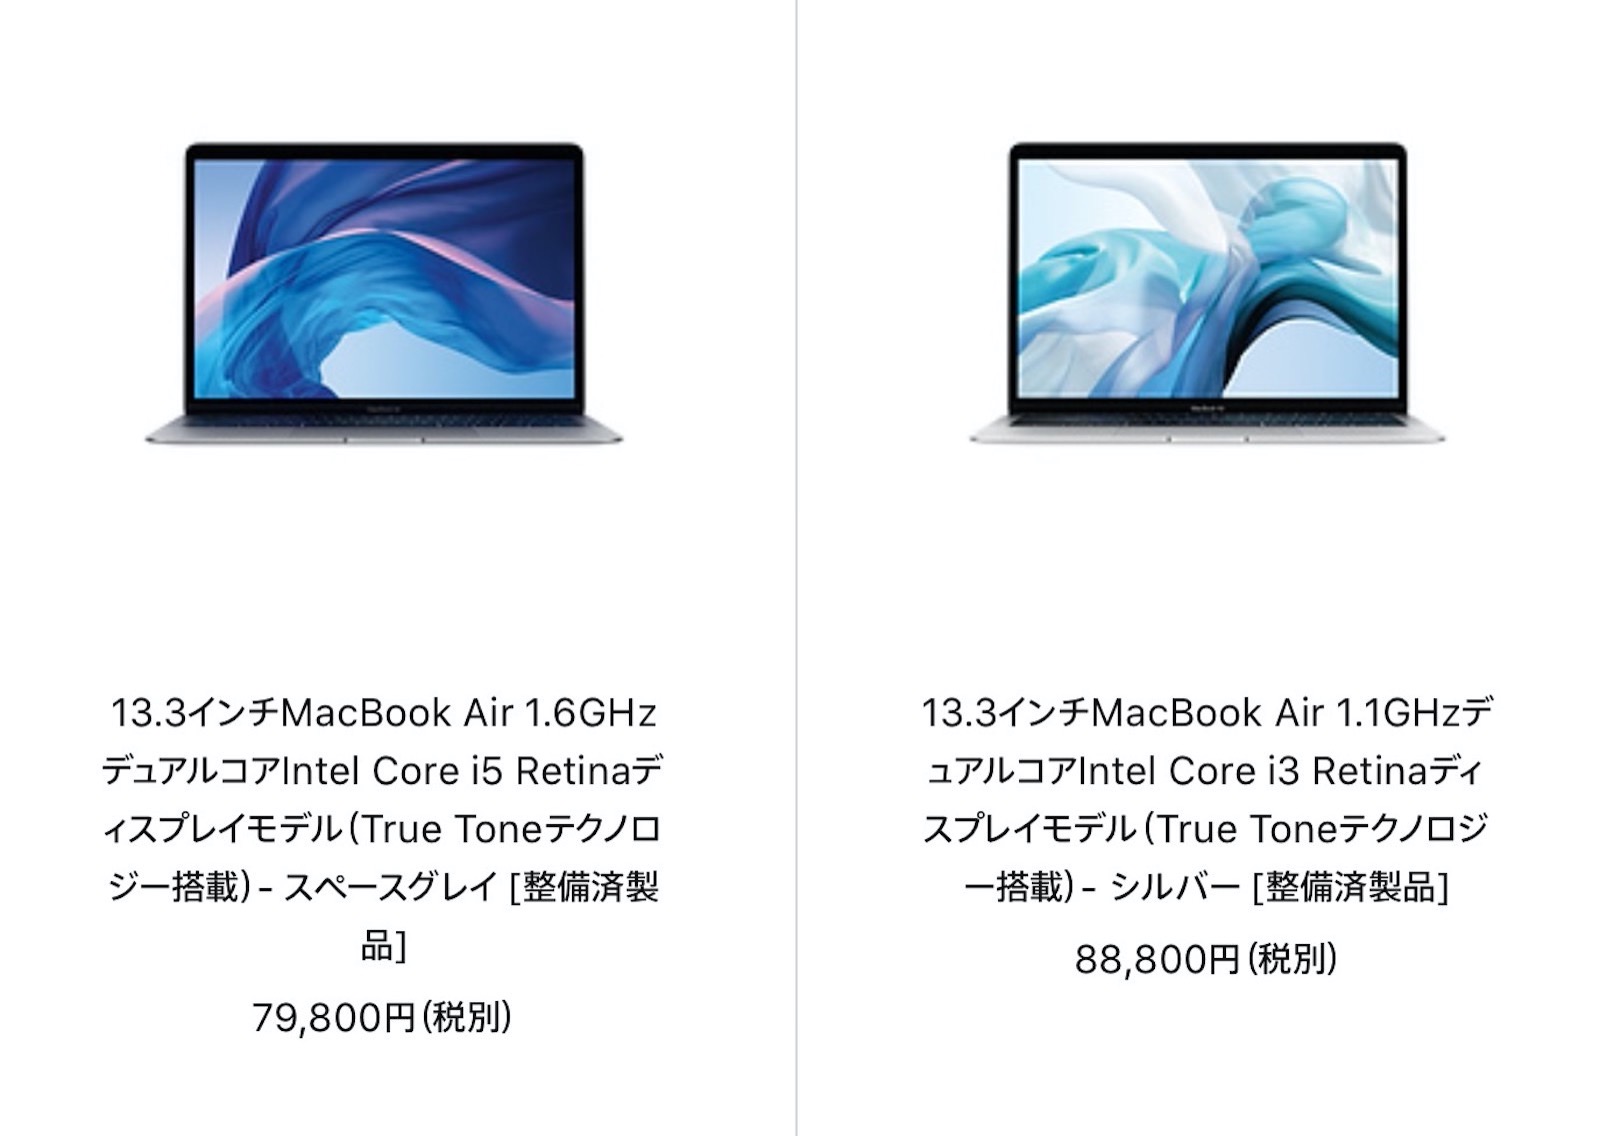 Apple refurbished macbook air 20200807